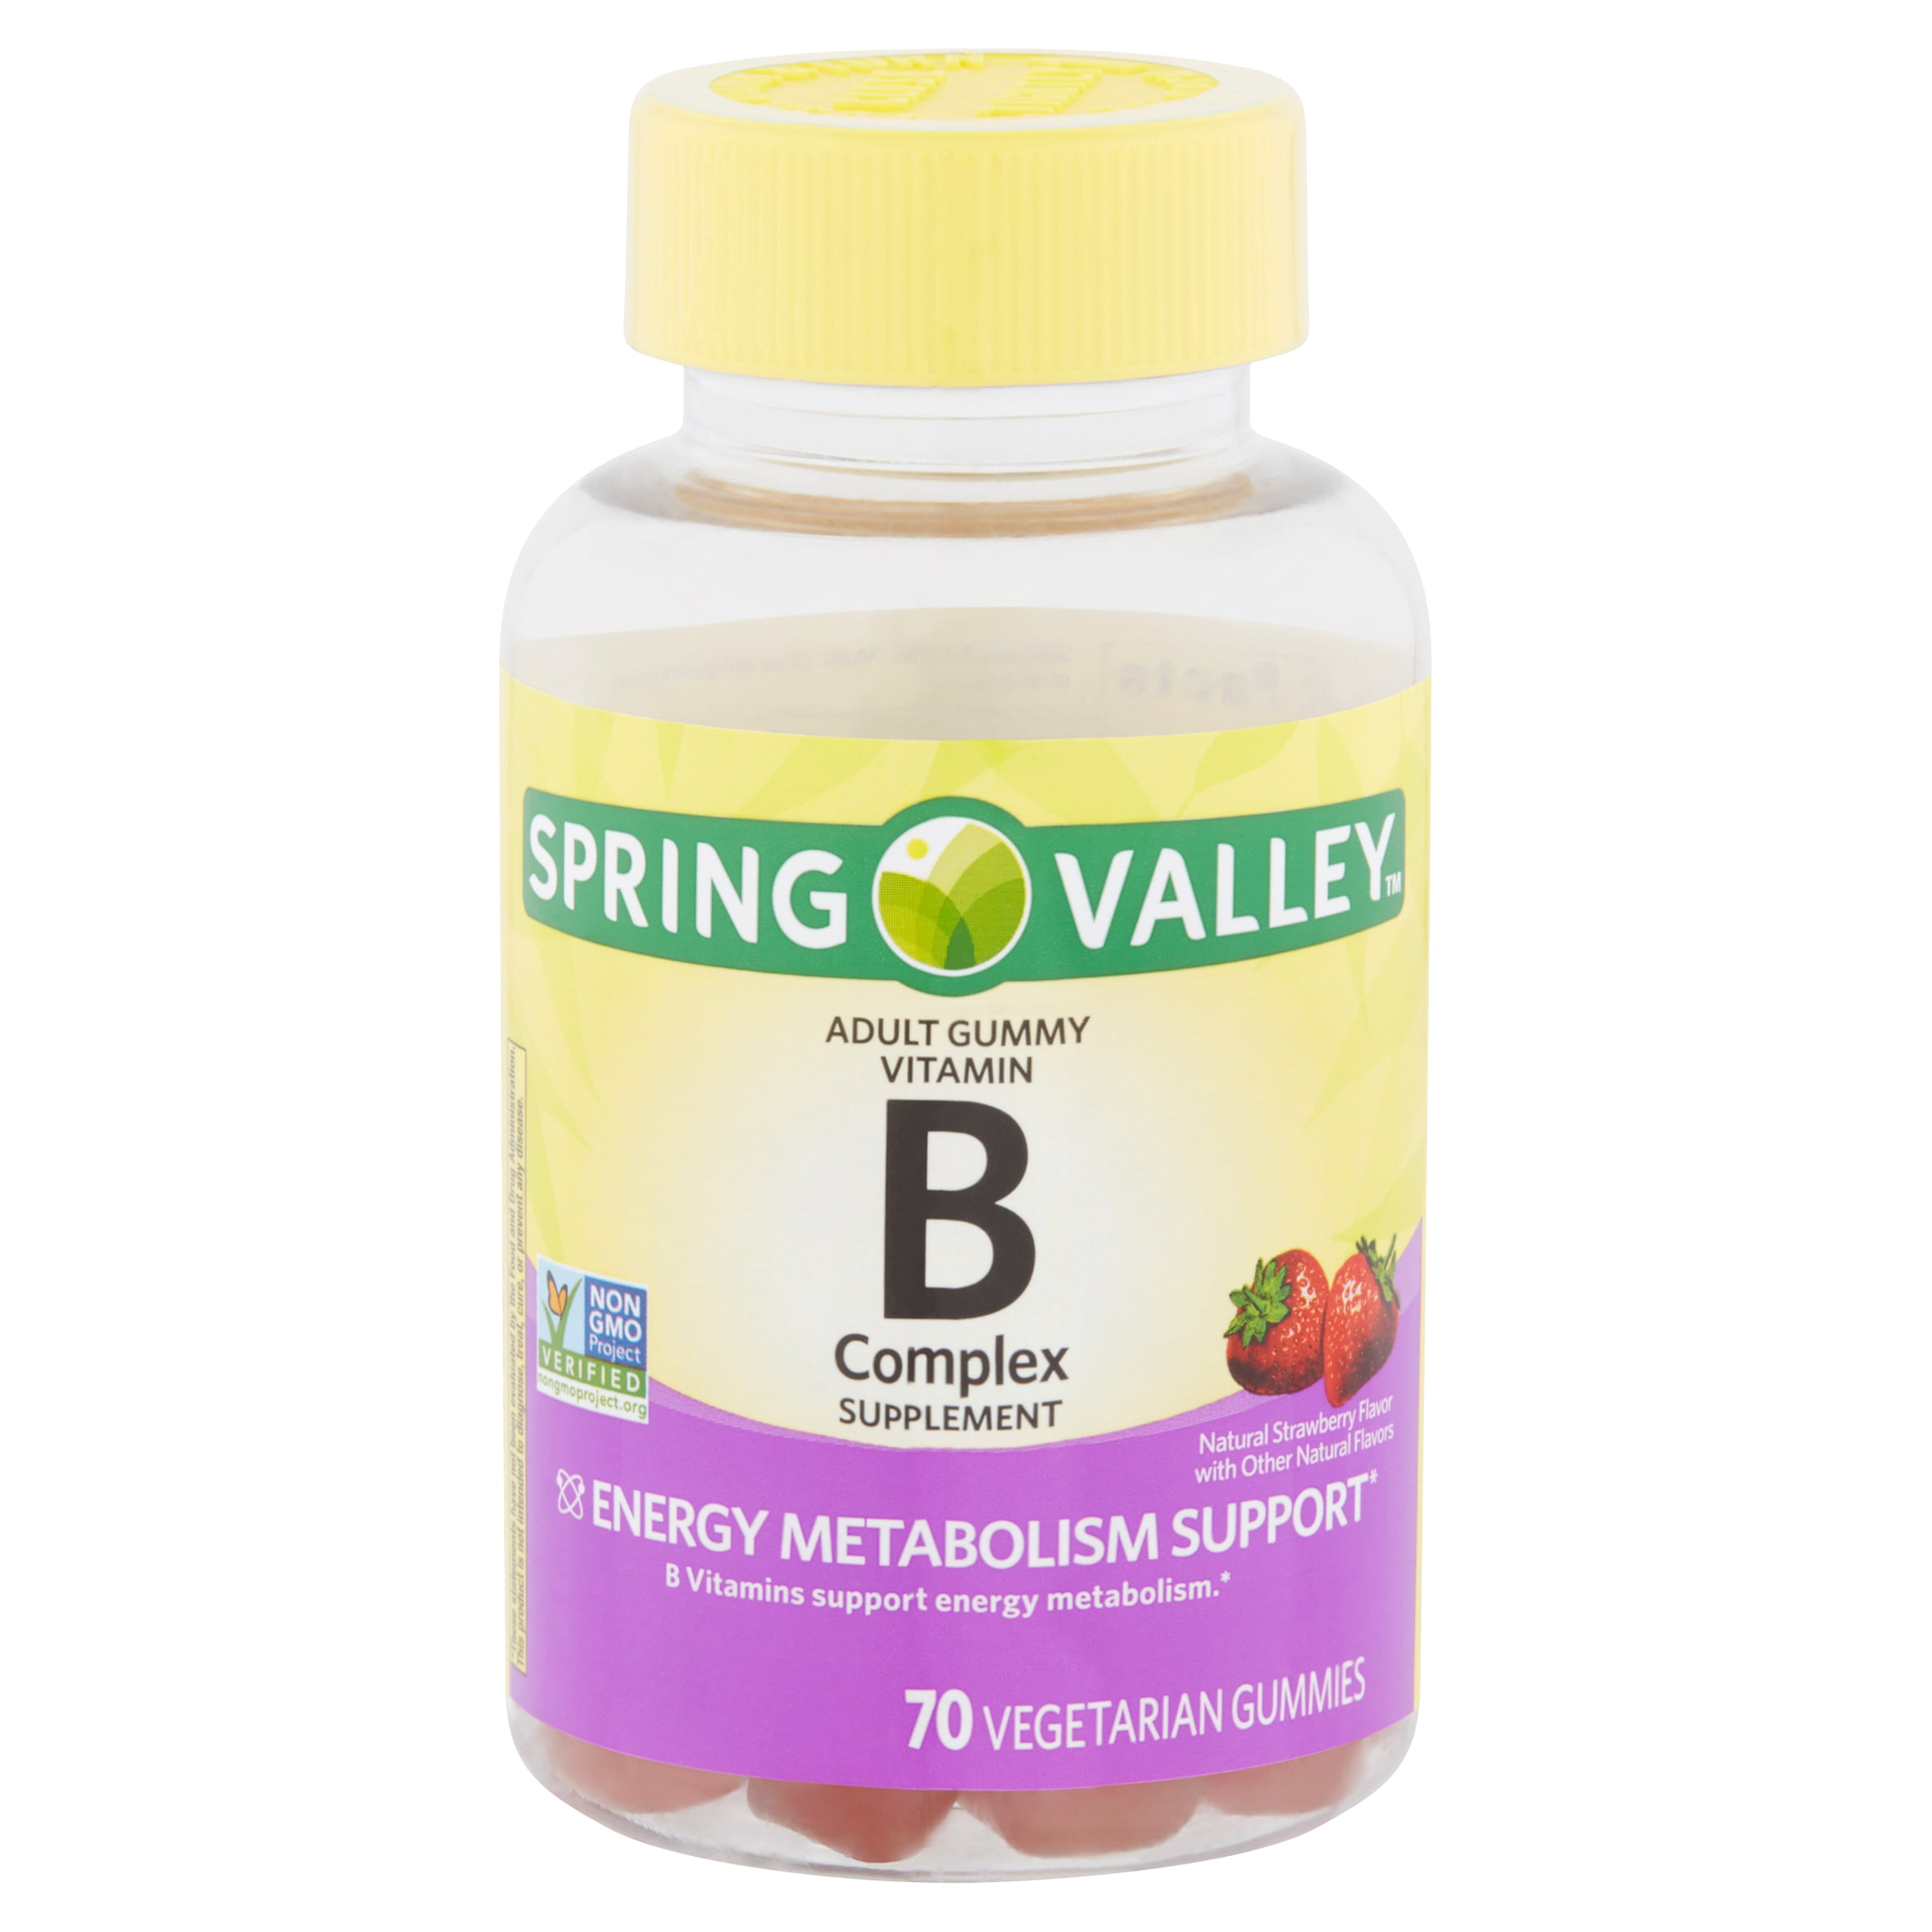 spring-valley-vitamin-b-complex-supplement-adult-vegetarian-gummies-70